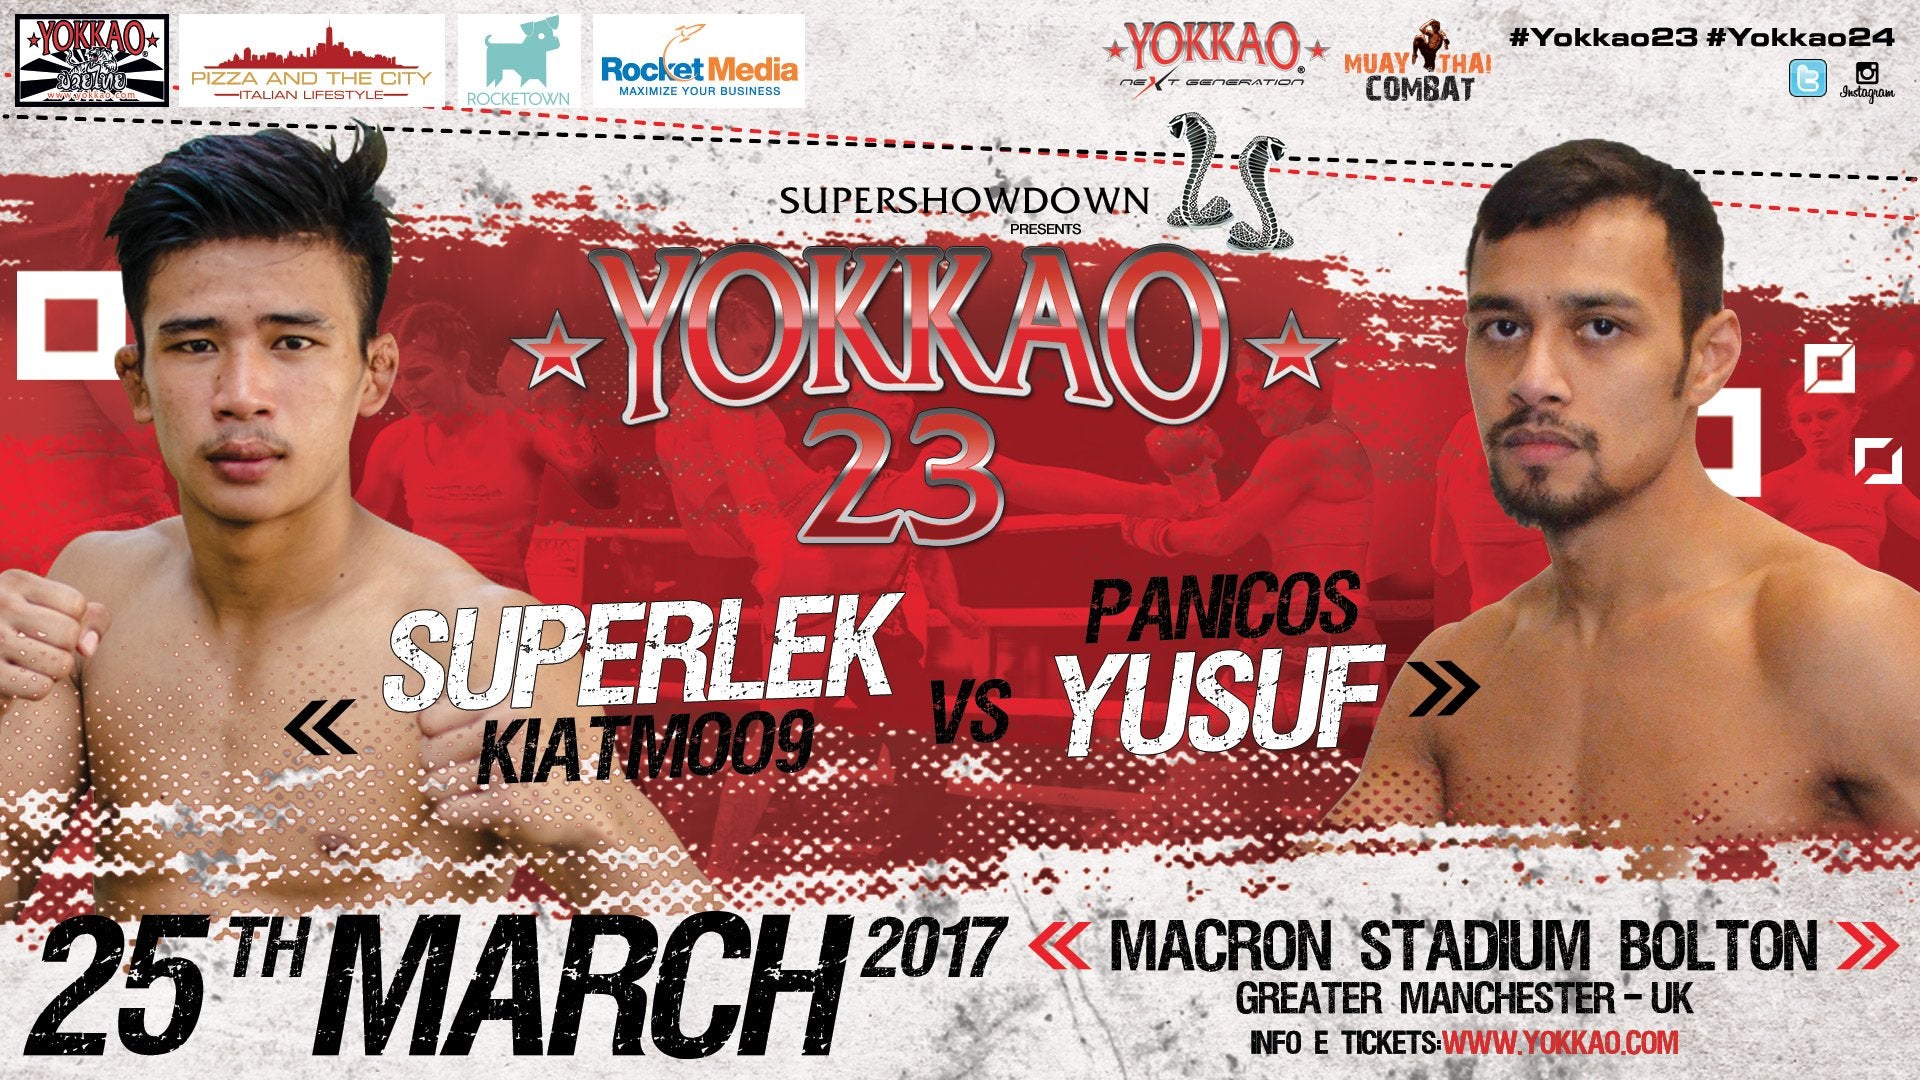 Superlek Kiatmoo9 vs Panicos Yusuf at YOKKAO 23!